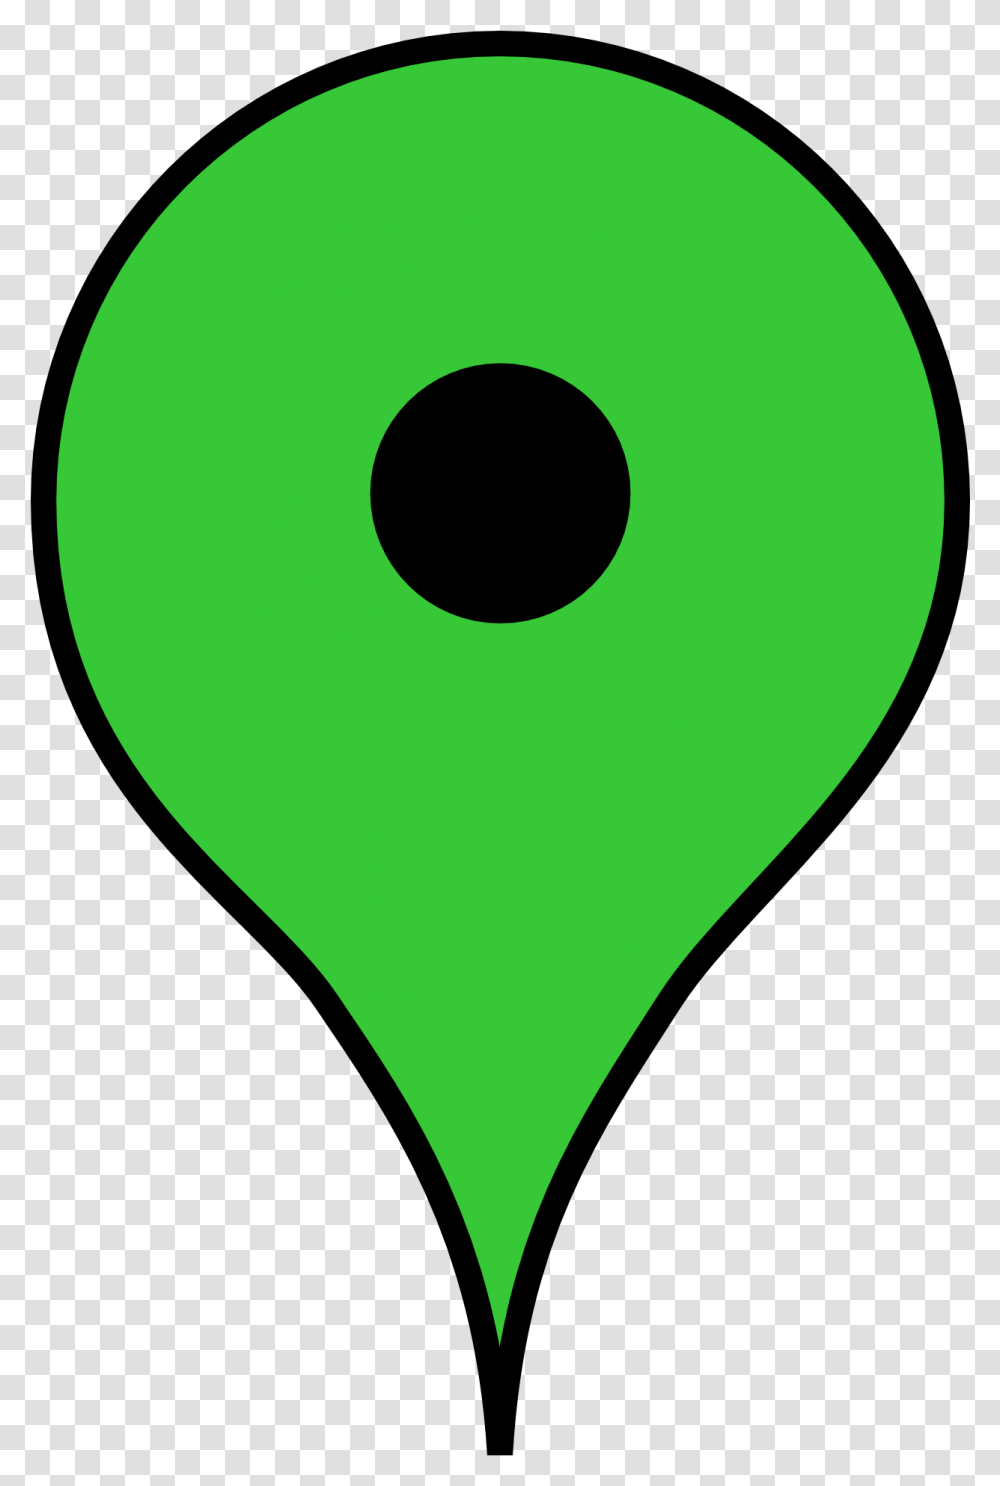 Landmark Map Marker Google Map Marker Green, Light, Ball, Aircraft, Vehicle Transparent Png